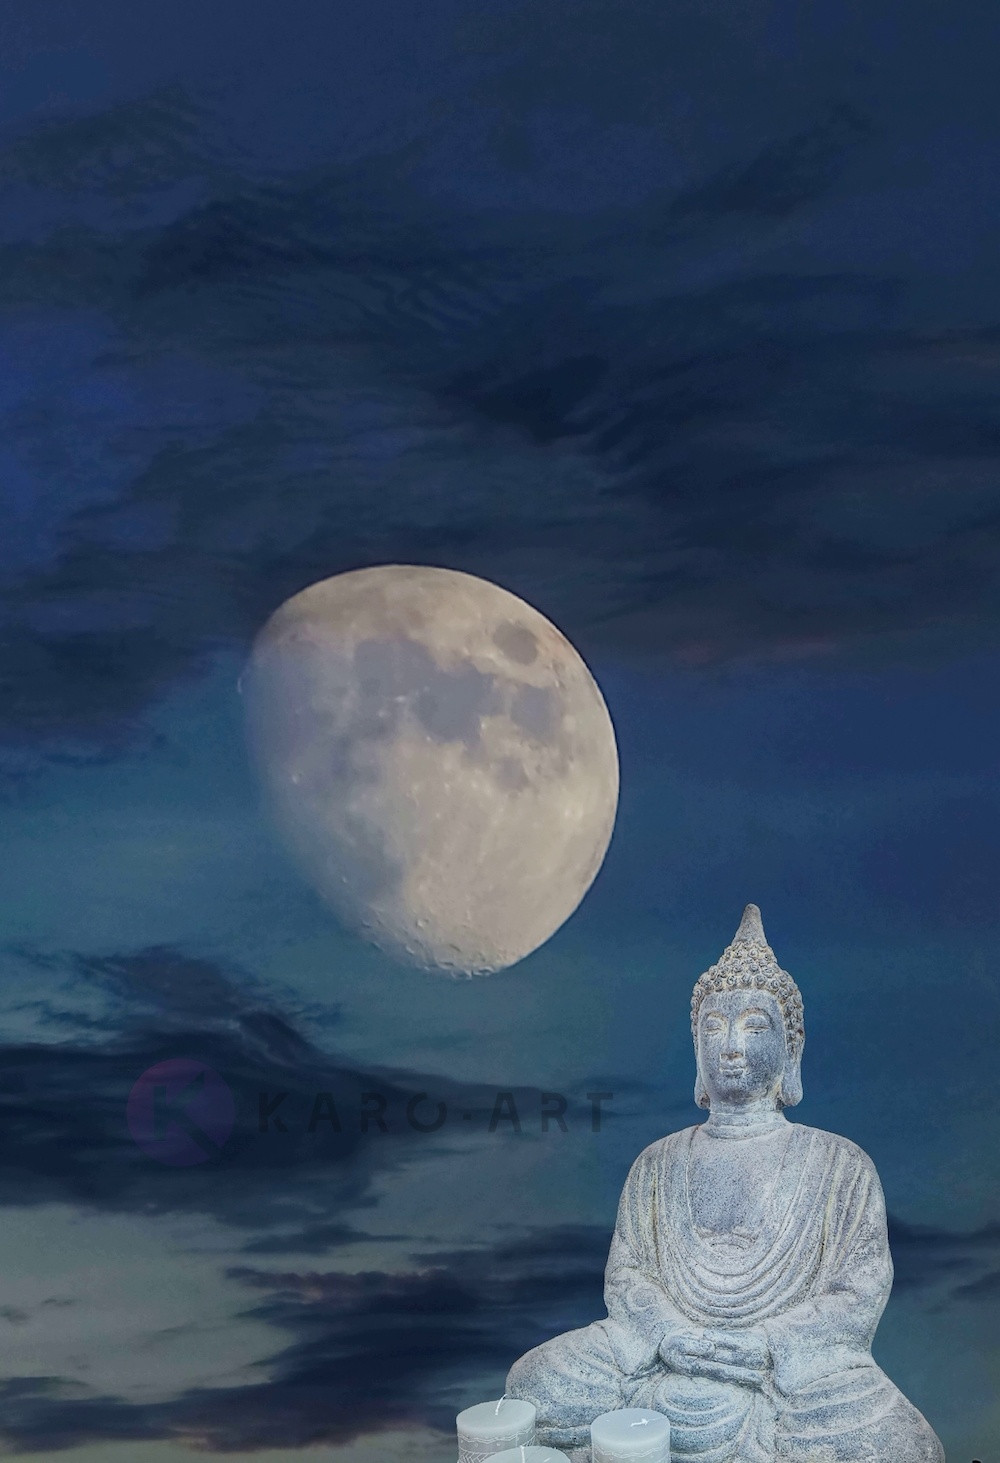 Afbeelding op acrylglas - Boeddha, meditatie in het maanlicht